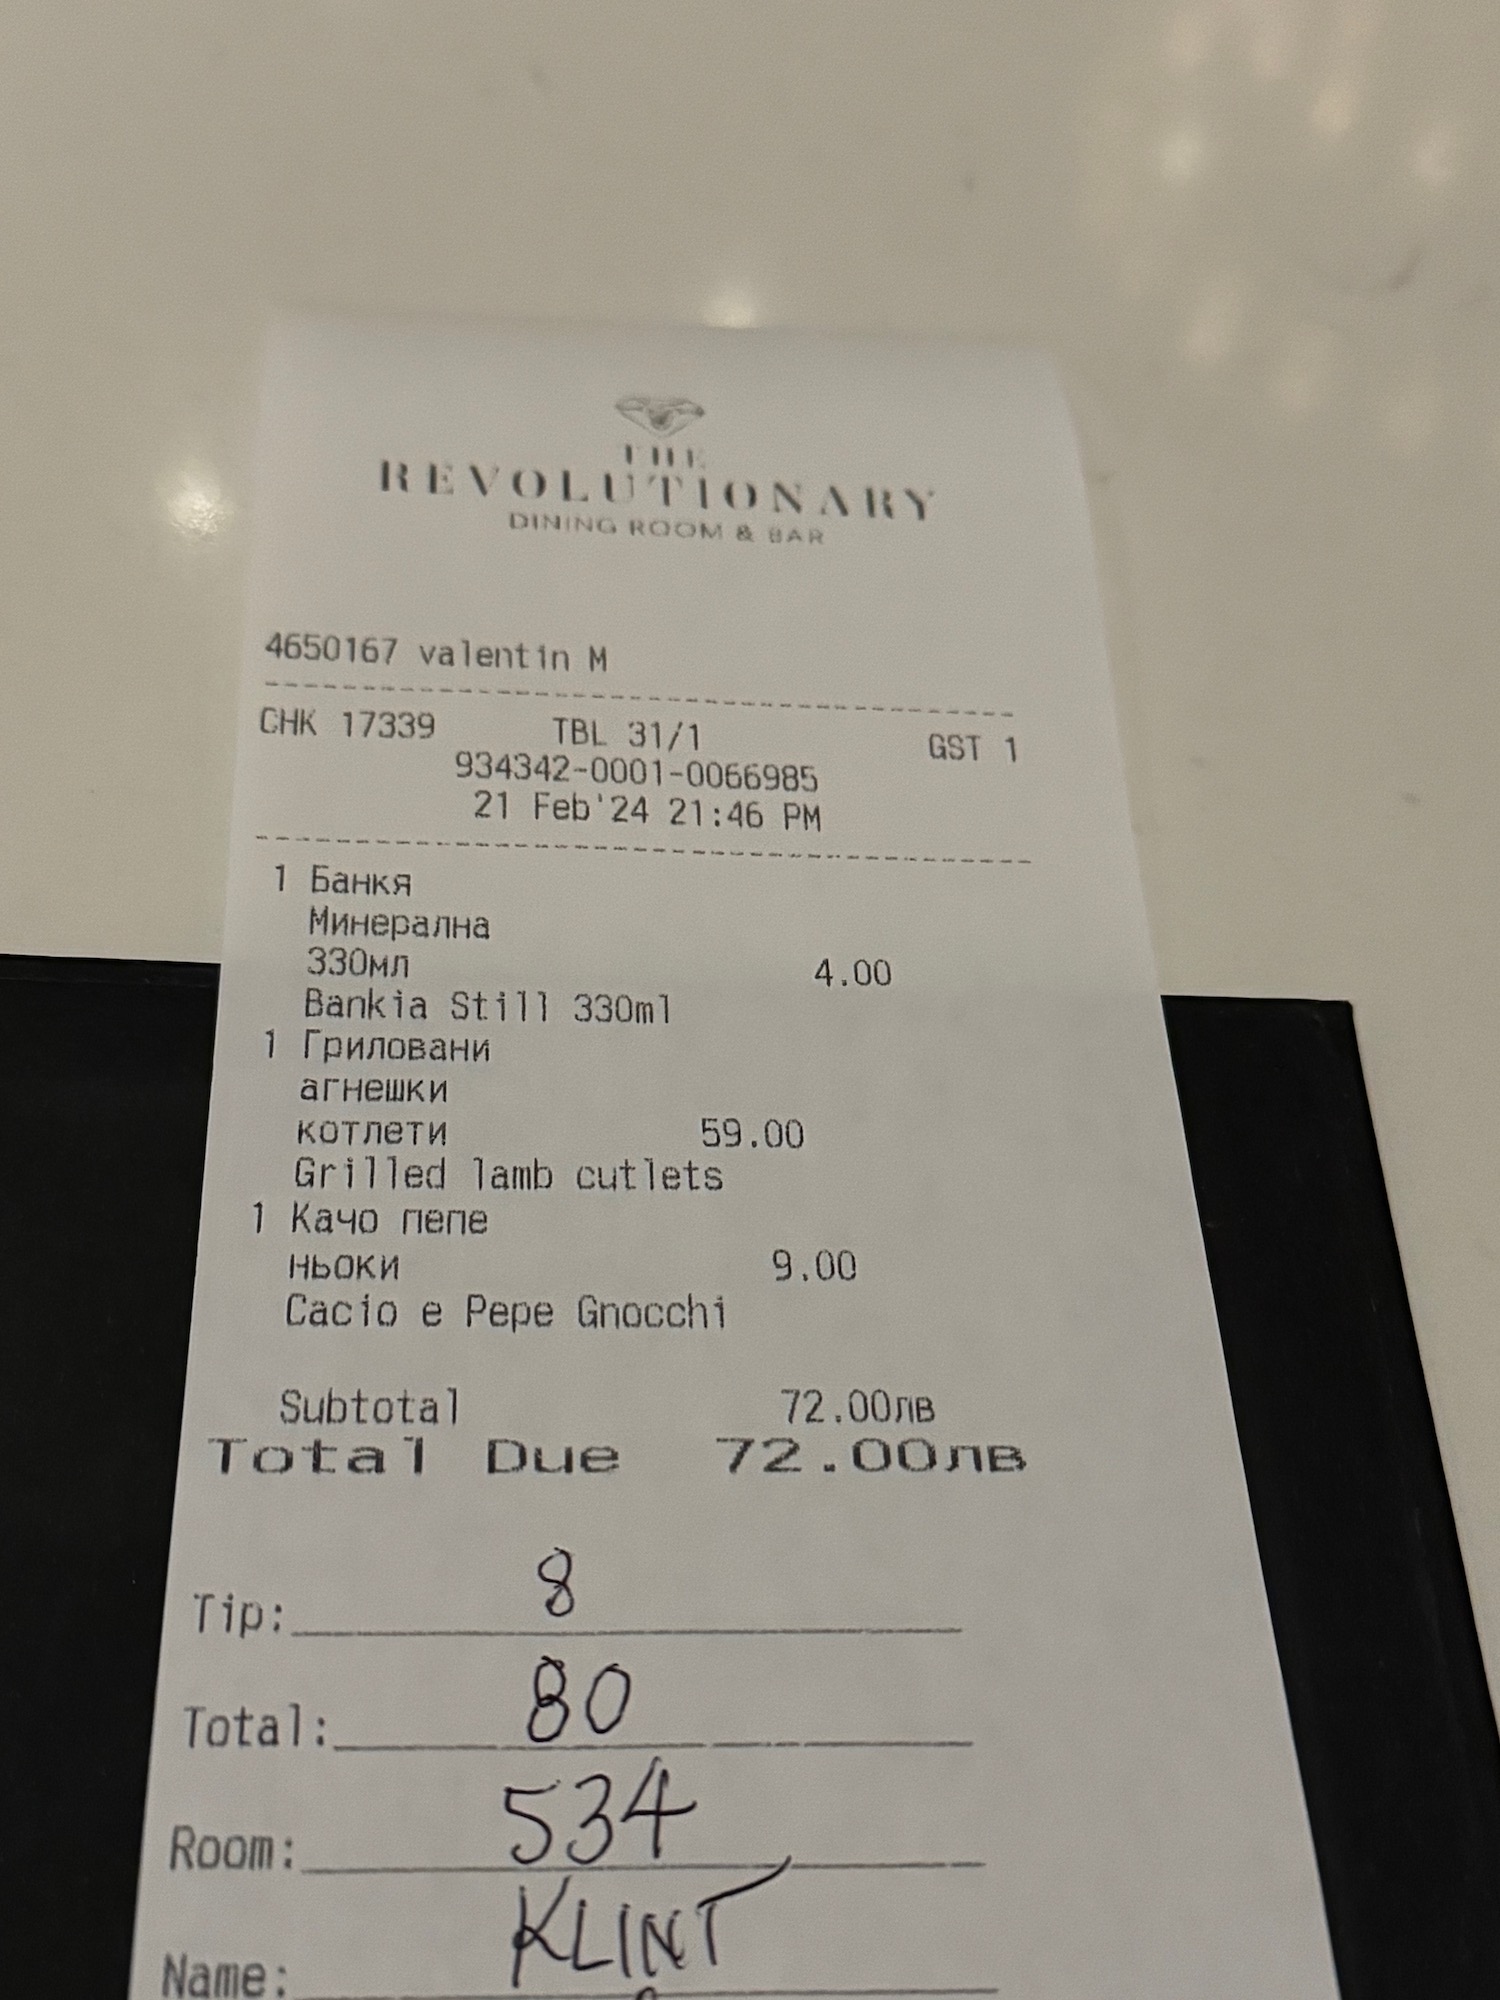 a receipt on a table